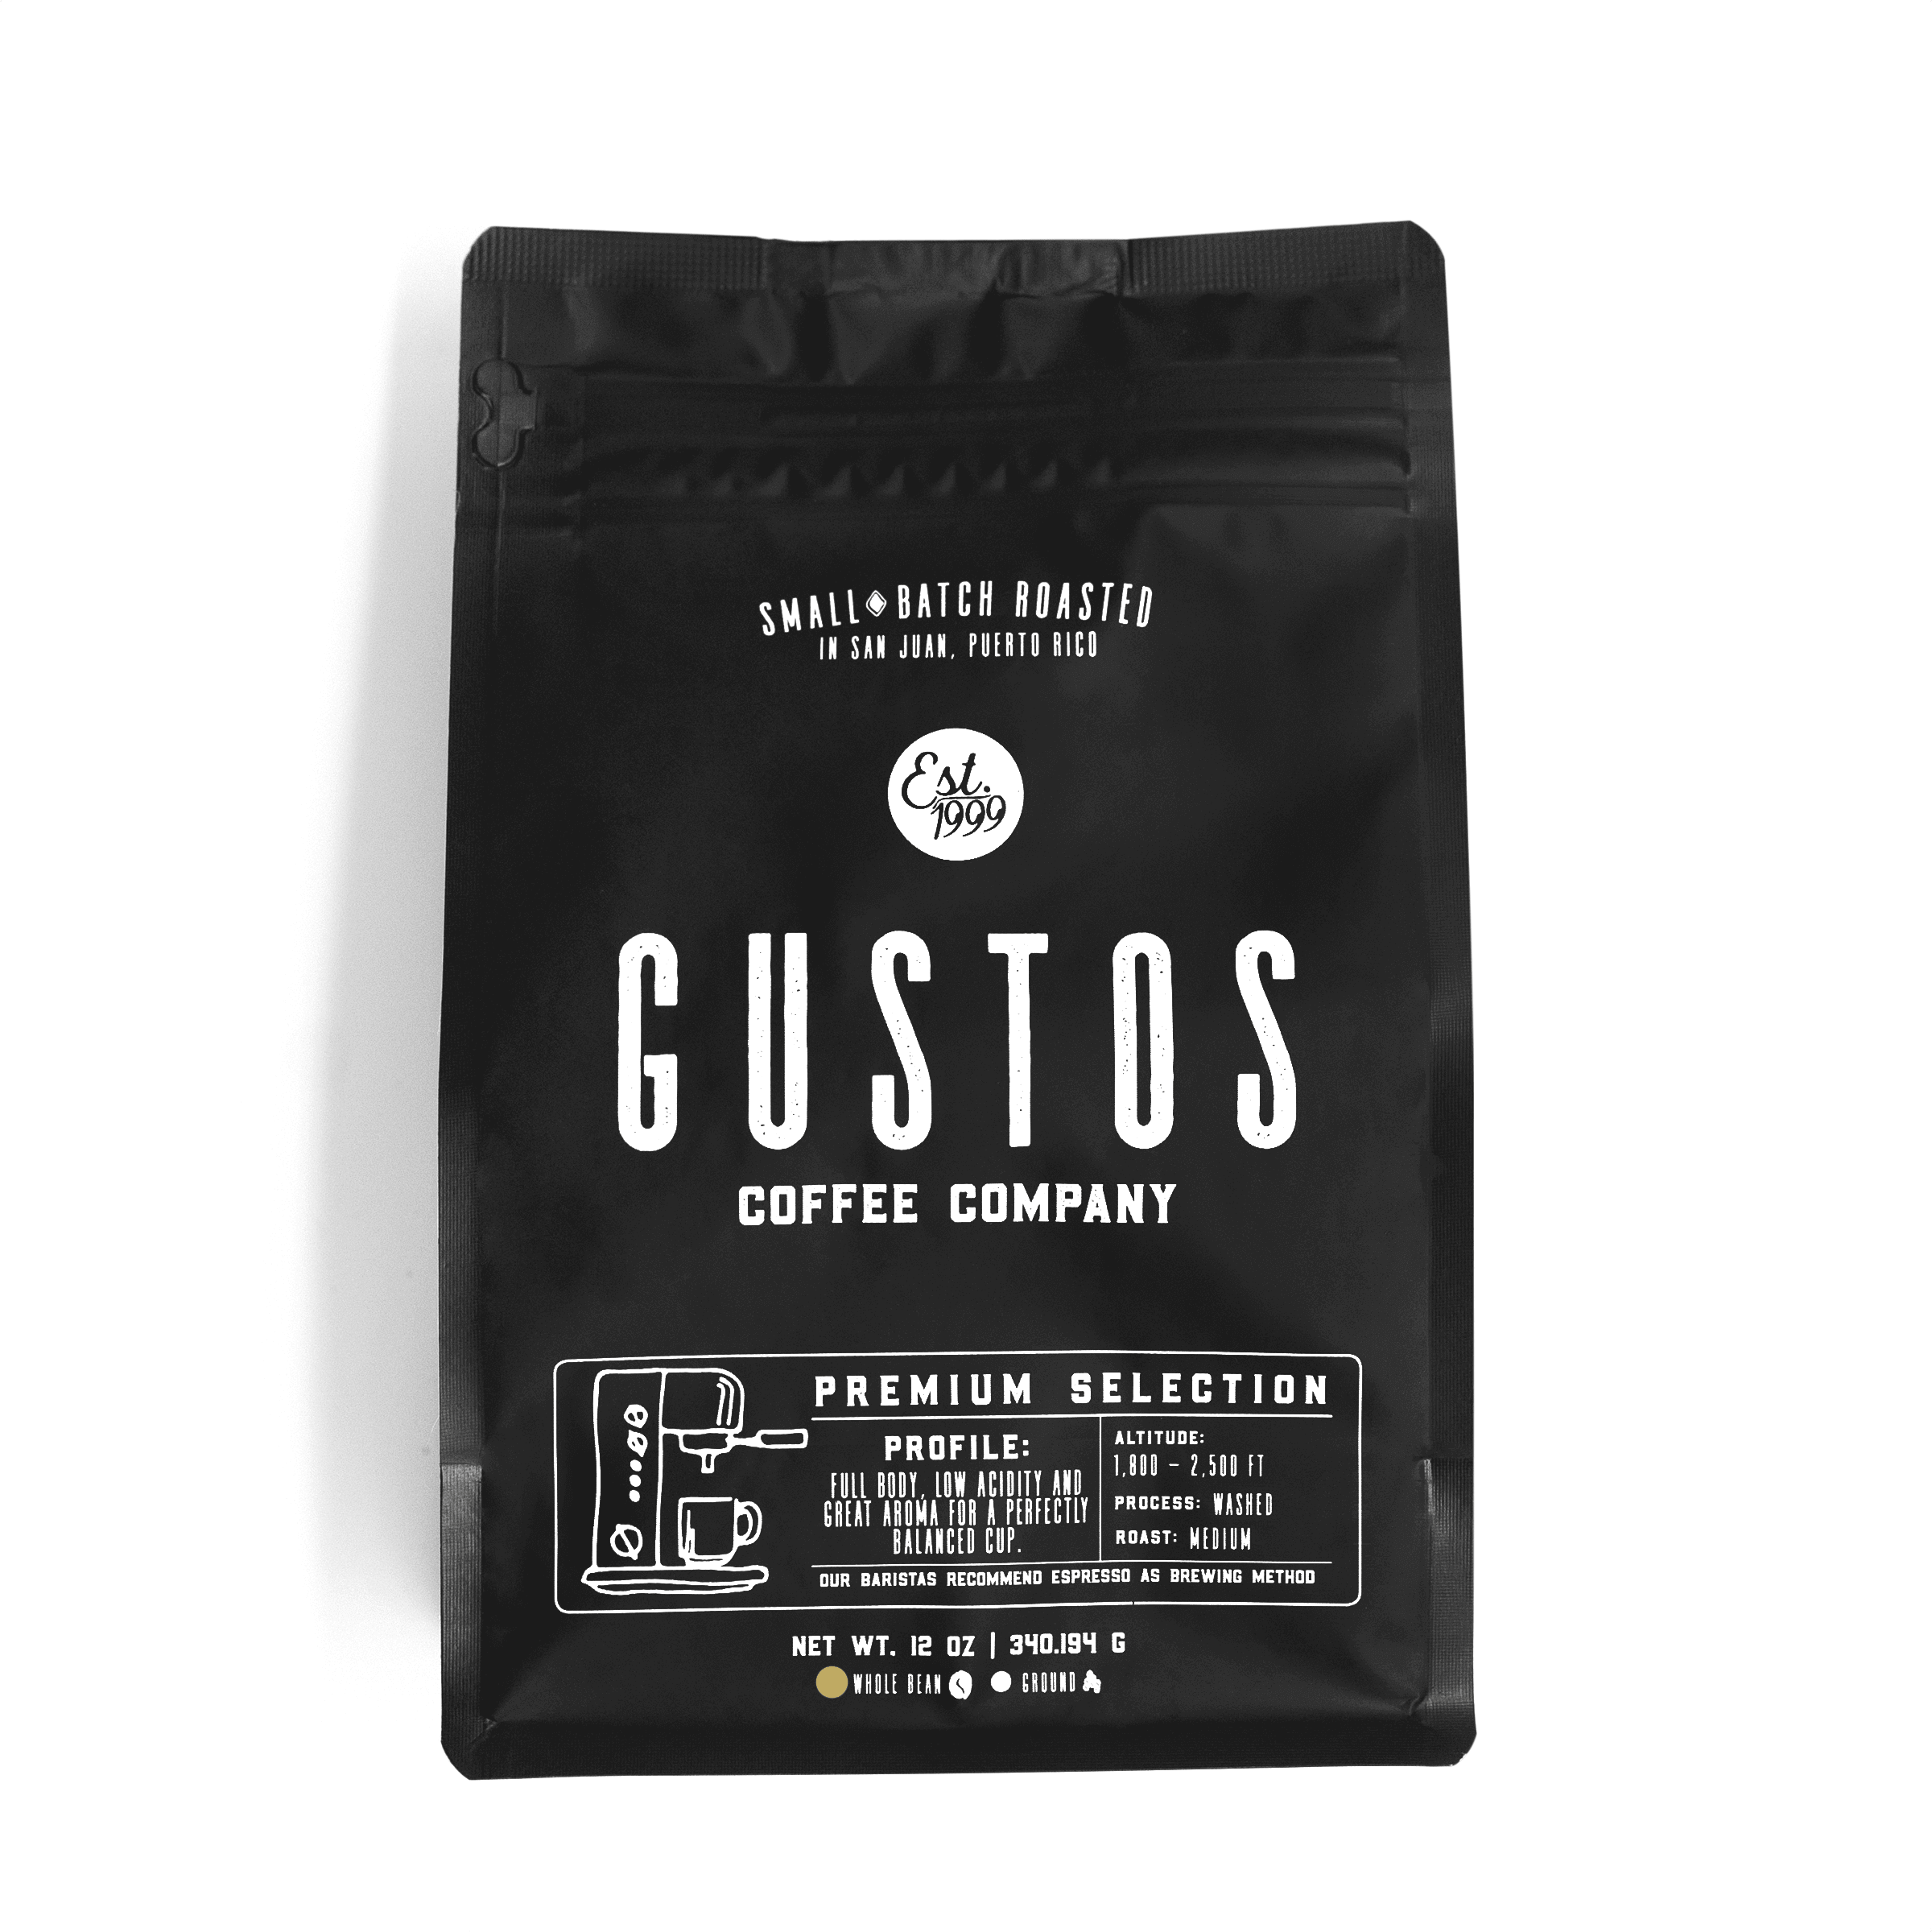 Gustos Premium Selection 12 oz Whole Bean Coffee Puerto Rico